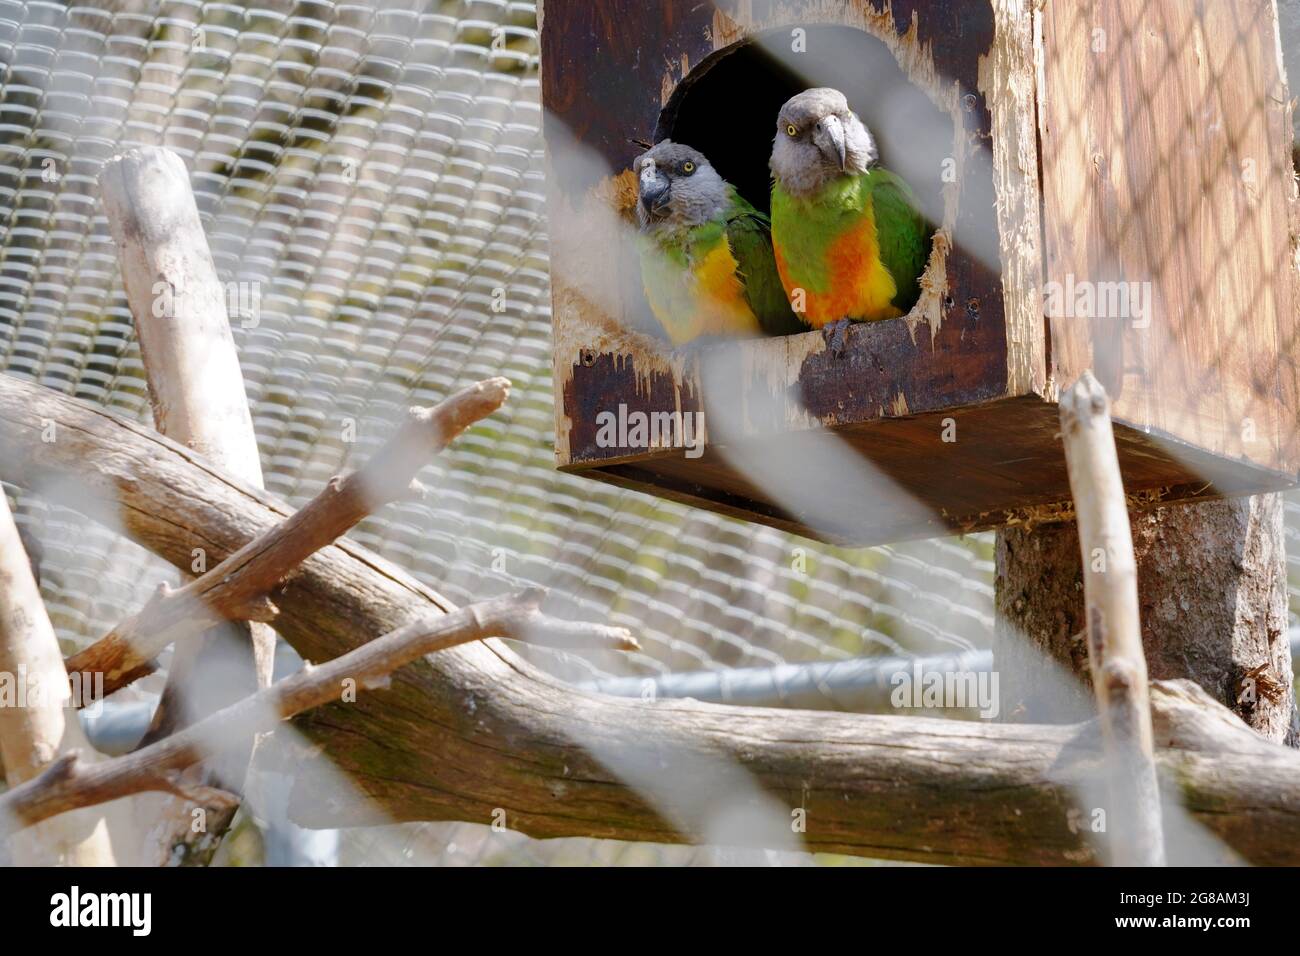 Un paio di pappagalli senegalesi in gabbia in uno zoo. Essi sono chiamati Poicephalus senegalus in latino. Sono ampiamente diffusi nell'Africa occidentale. Foto Stock